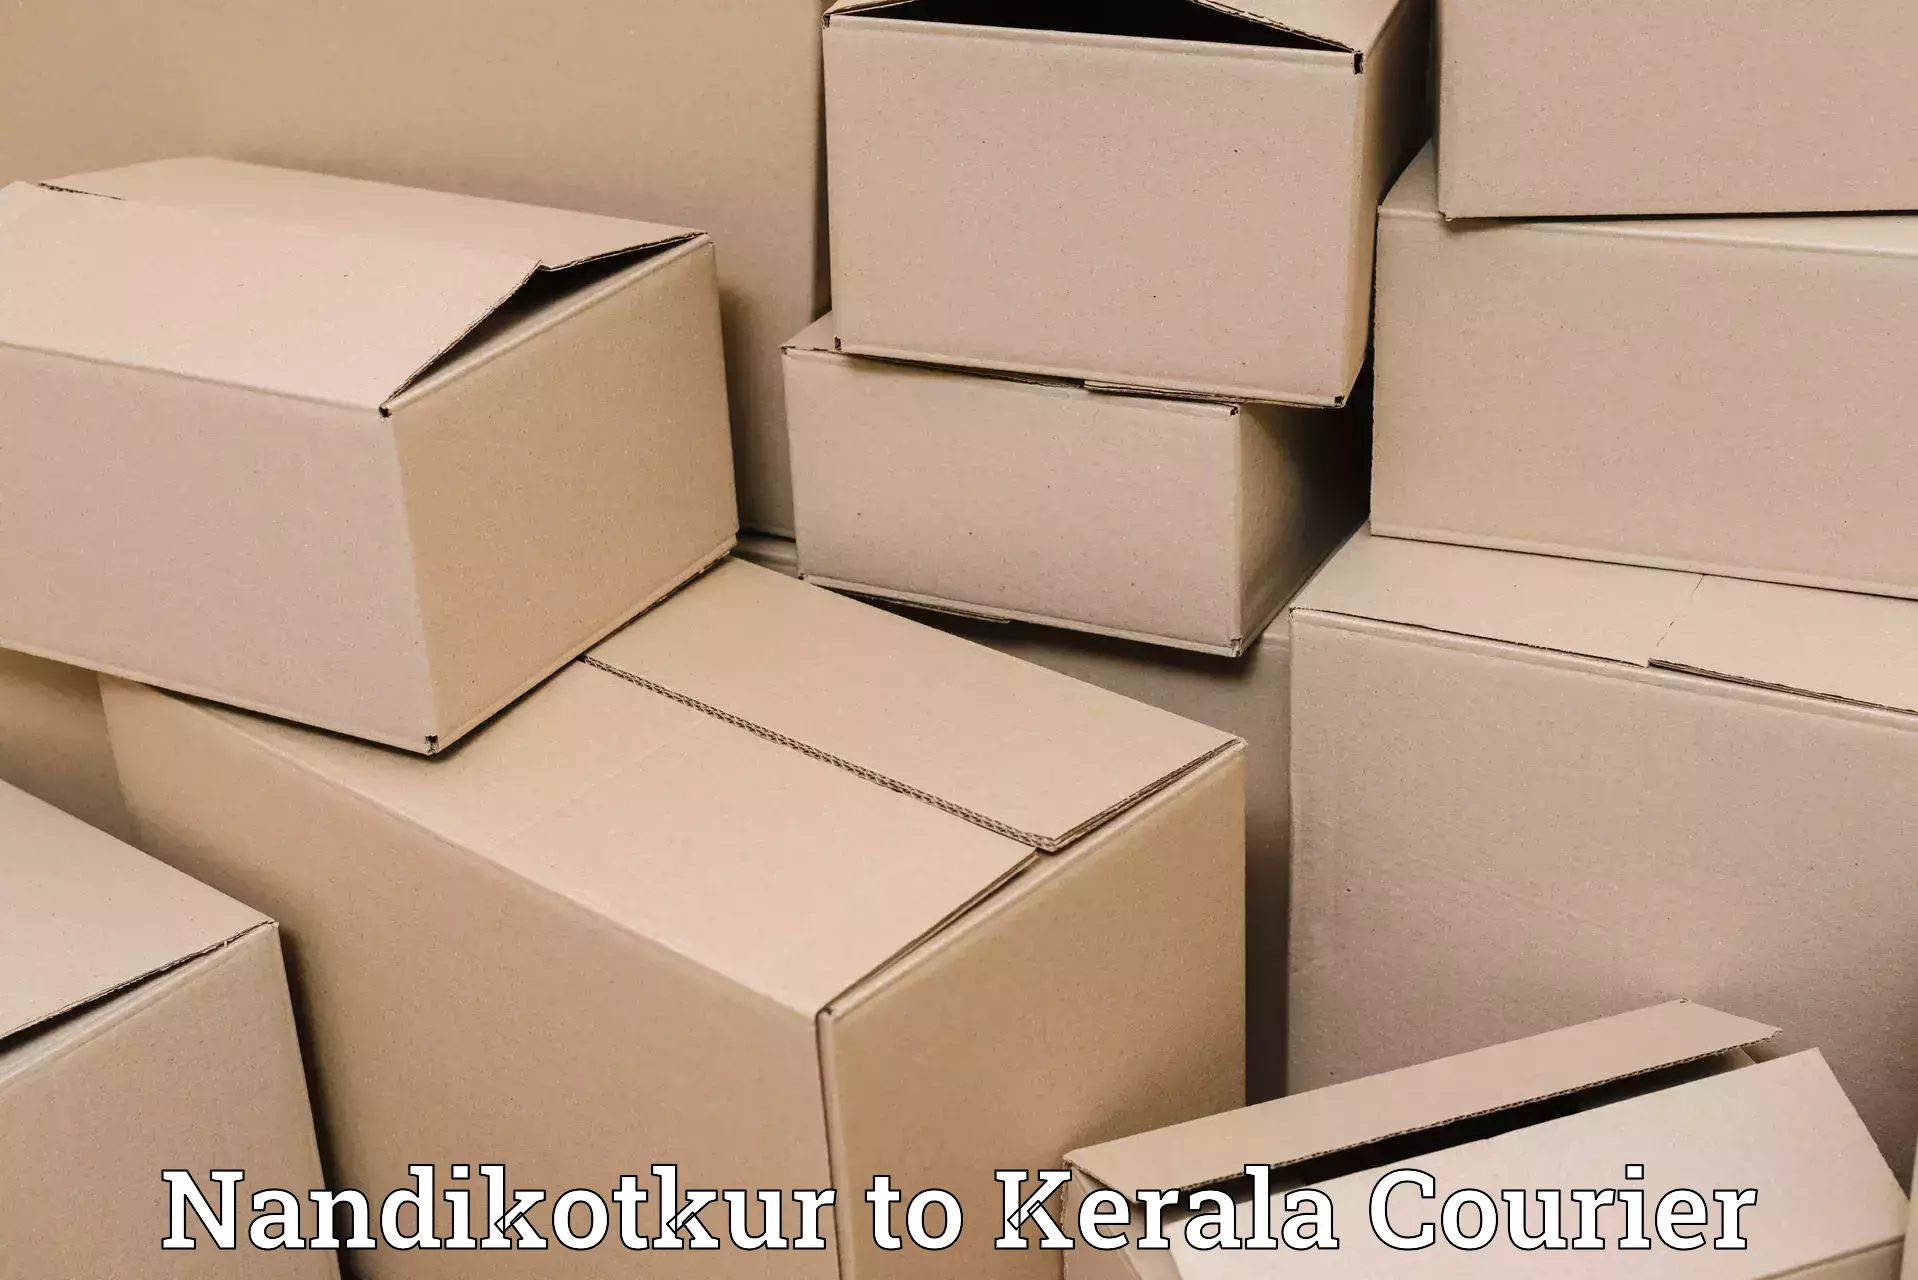 Efficient parcel tracking in Nandikotkur to Kerala